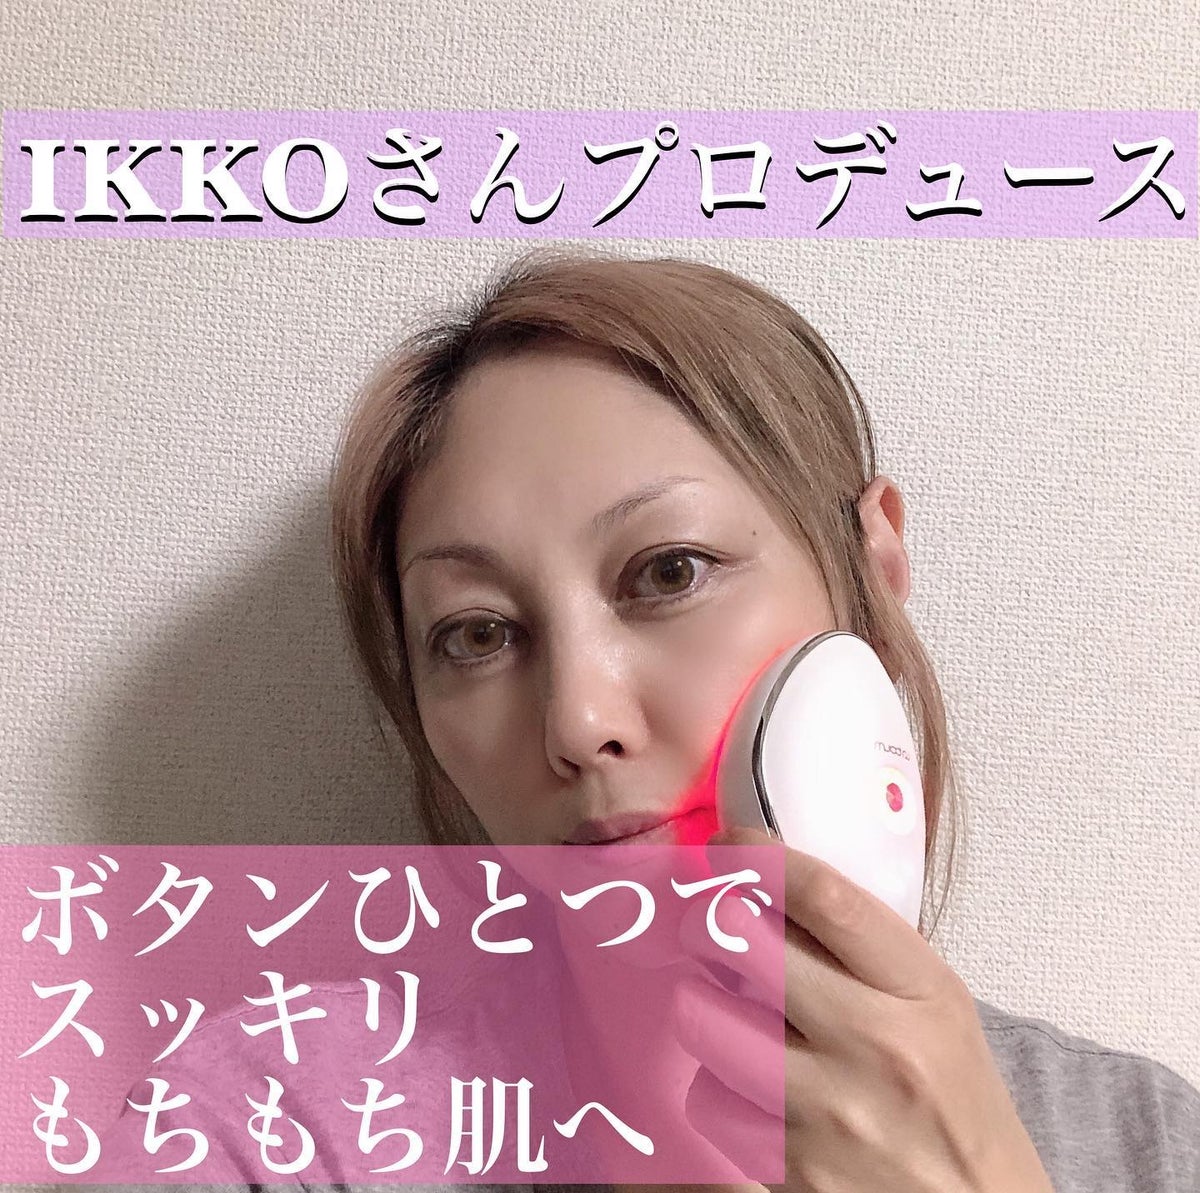 MEラボン IKKOさんプロデュース美顔器